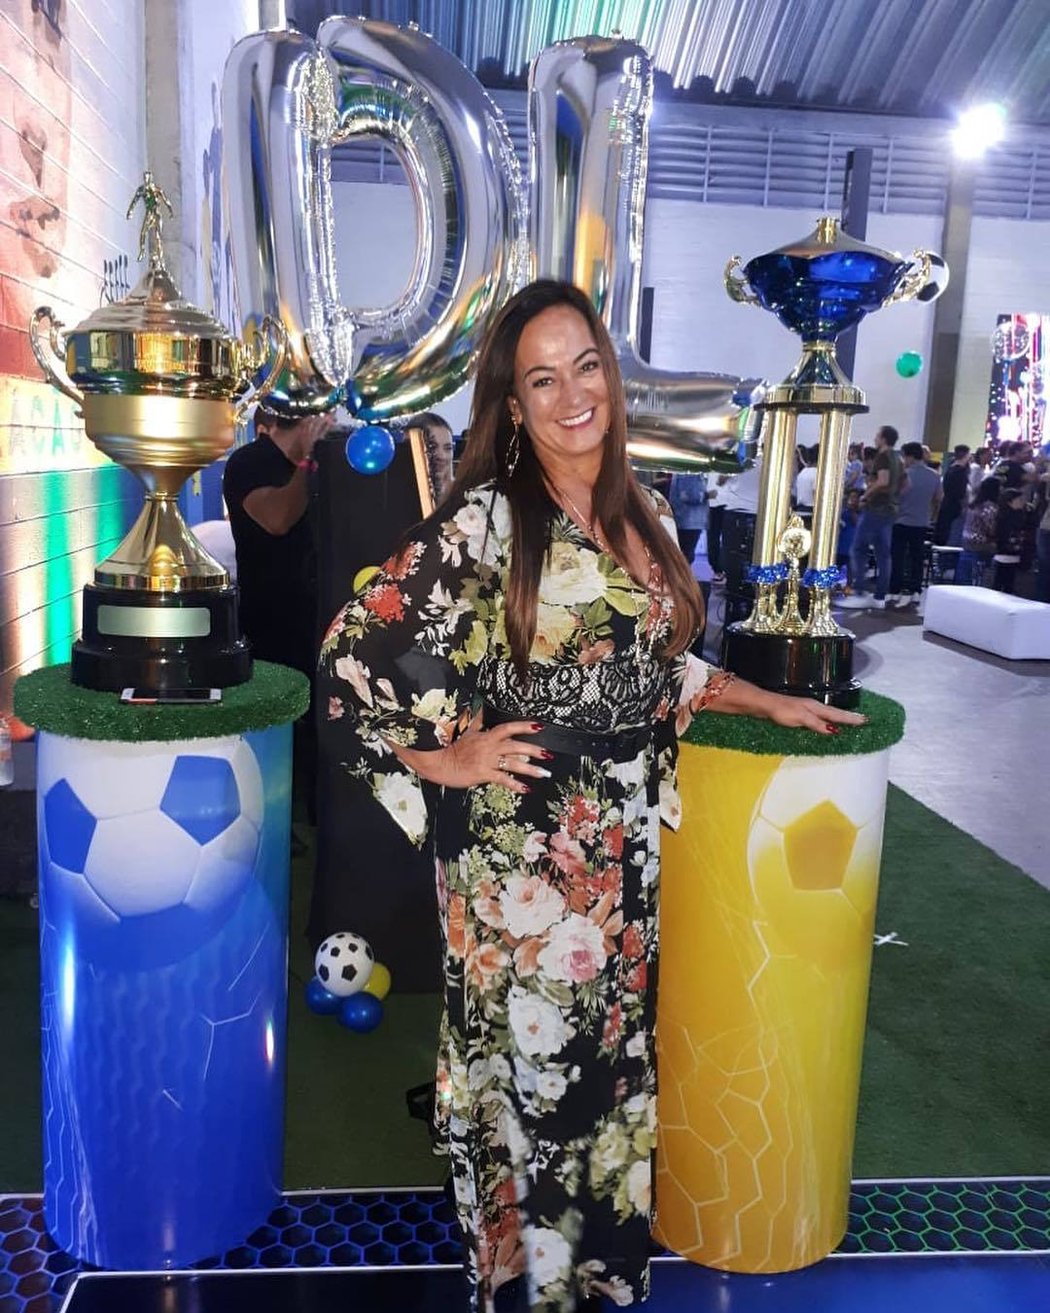 Nadine Gonçalves je matka slavného fotbalisty Neymara